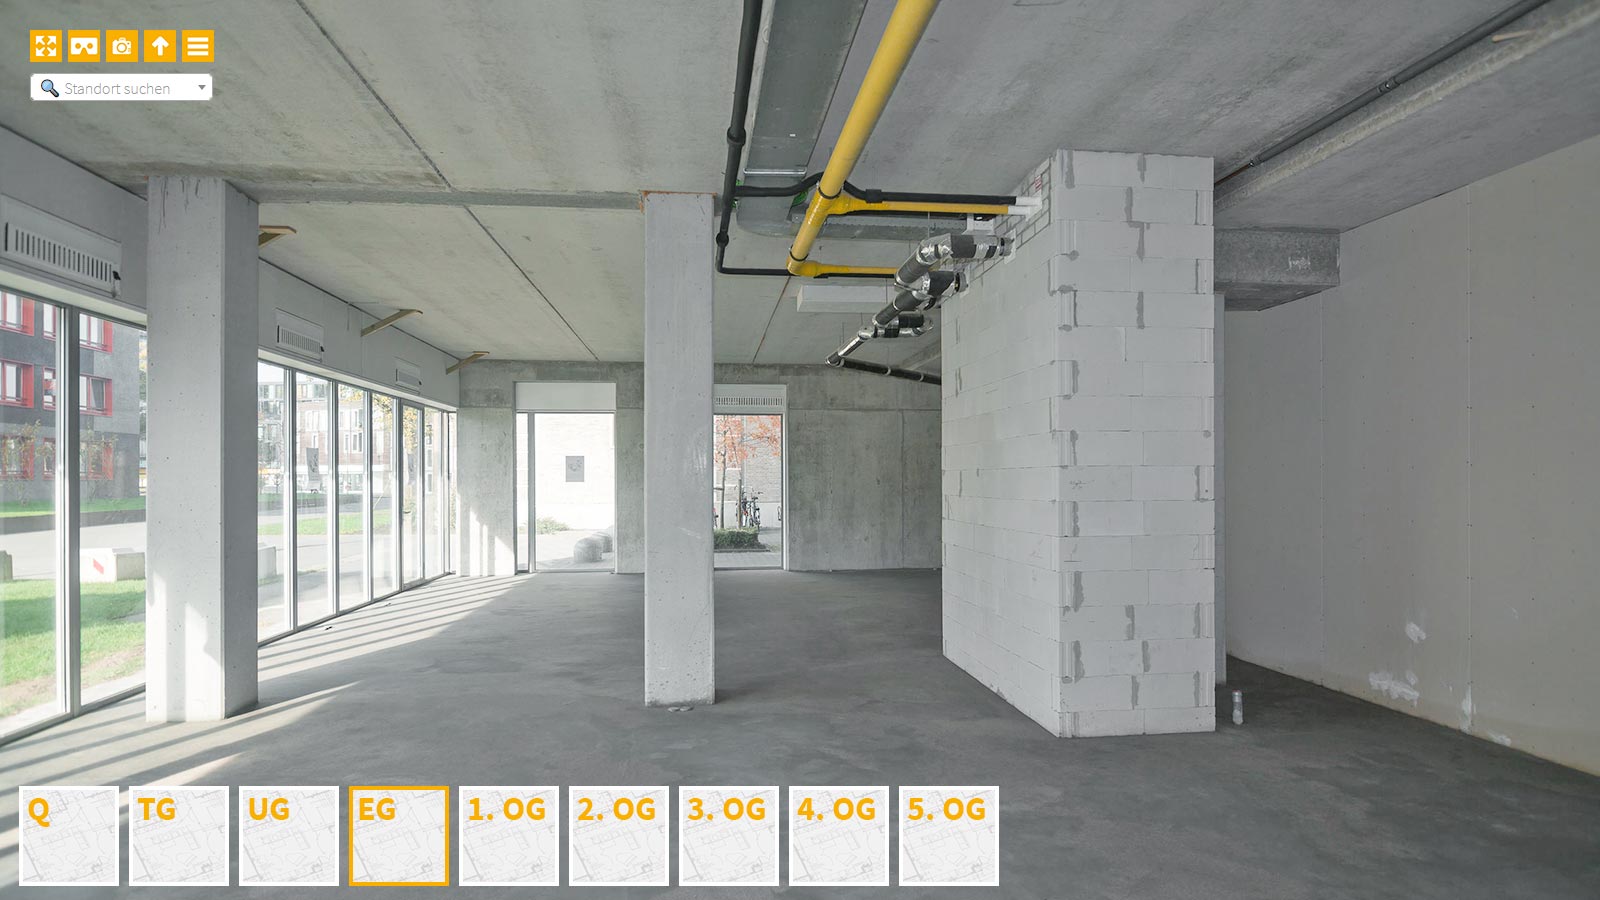 Baudokumentation 360 Grad bei gestörten Projekten in 


	


	


	


	


	


	


	


	


	


	Moers









, Bilddokumentation als virtueller Rundgang